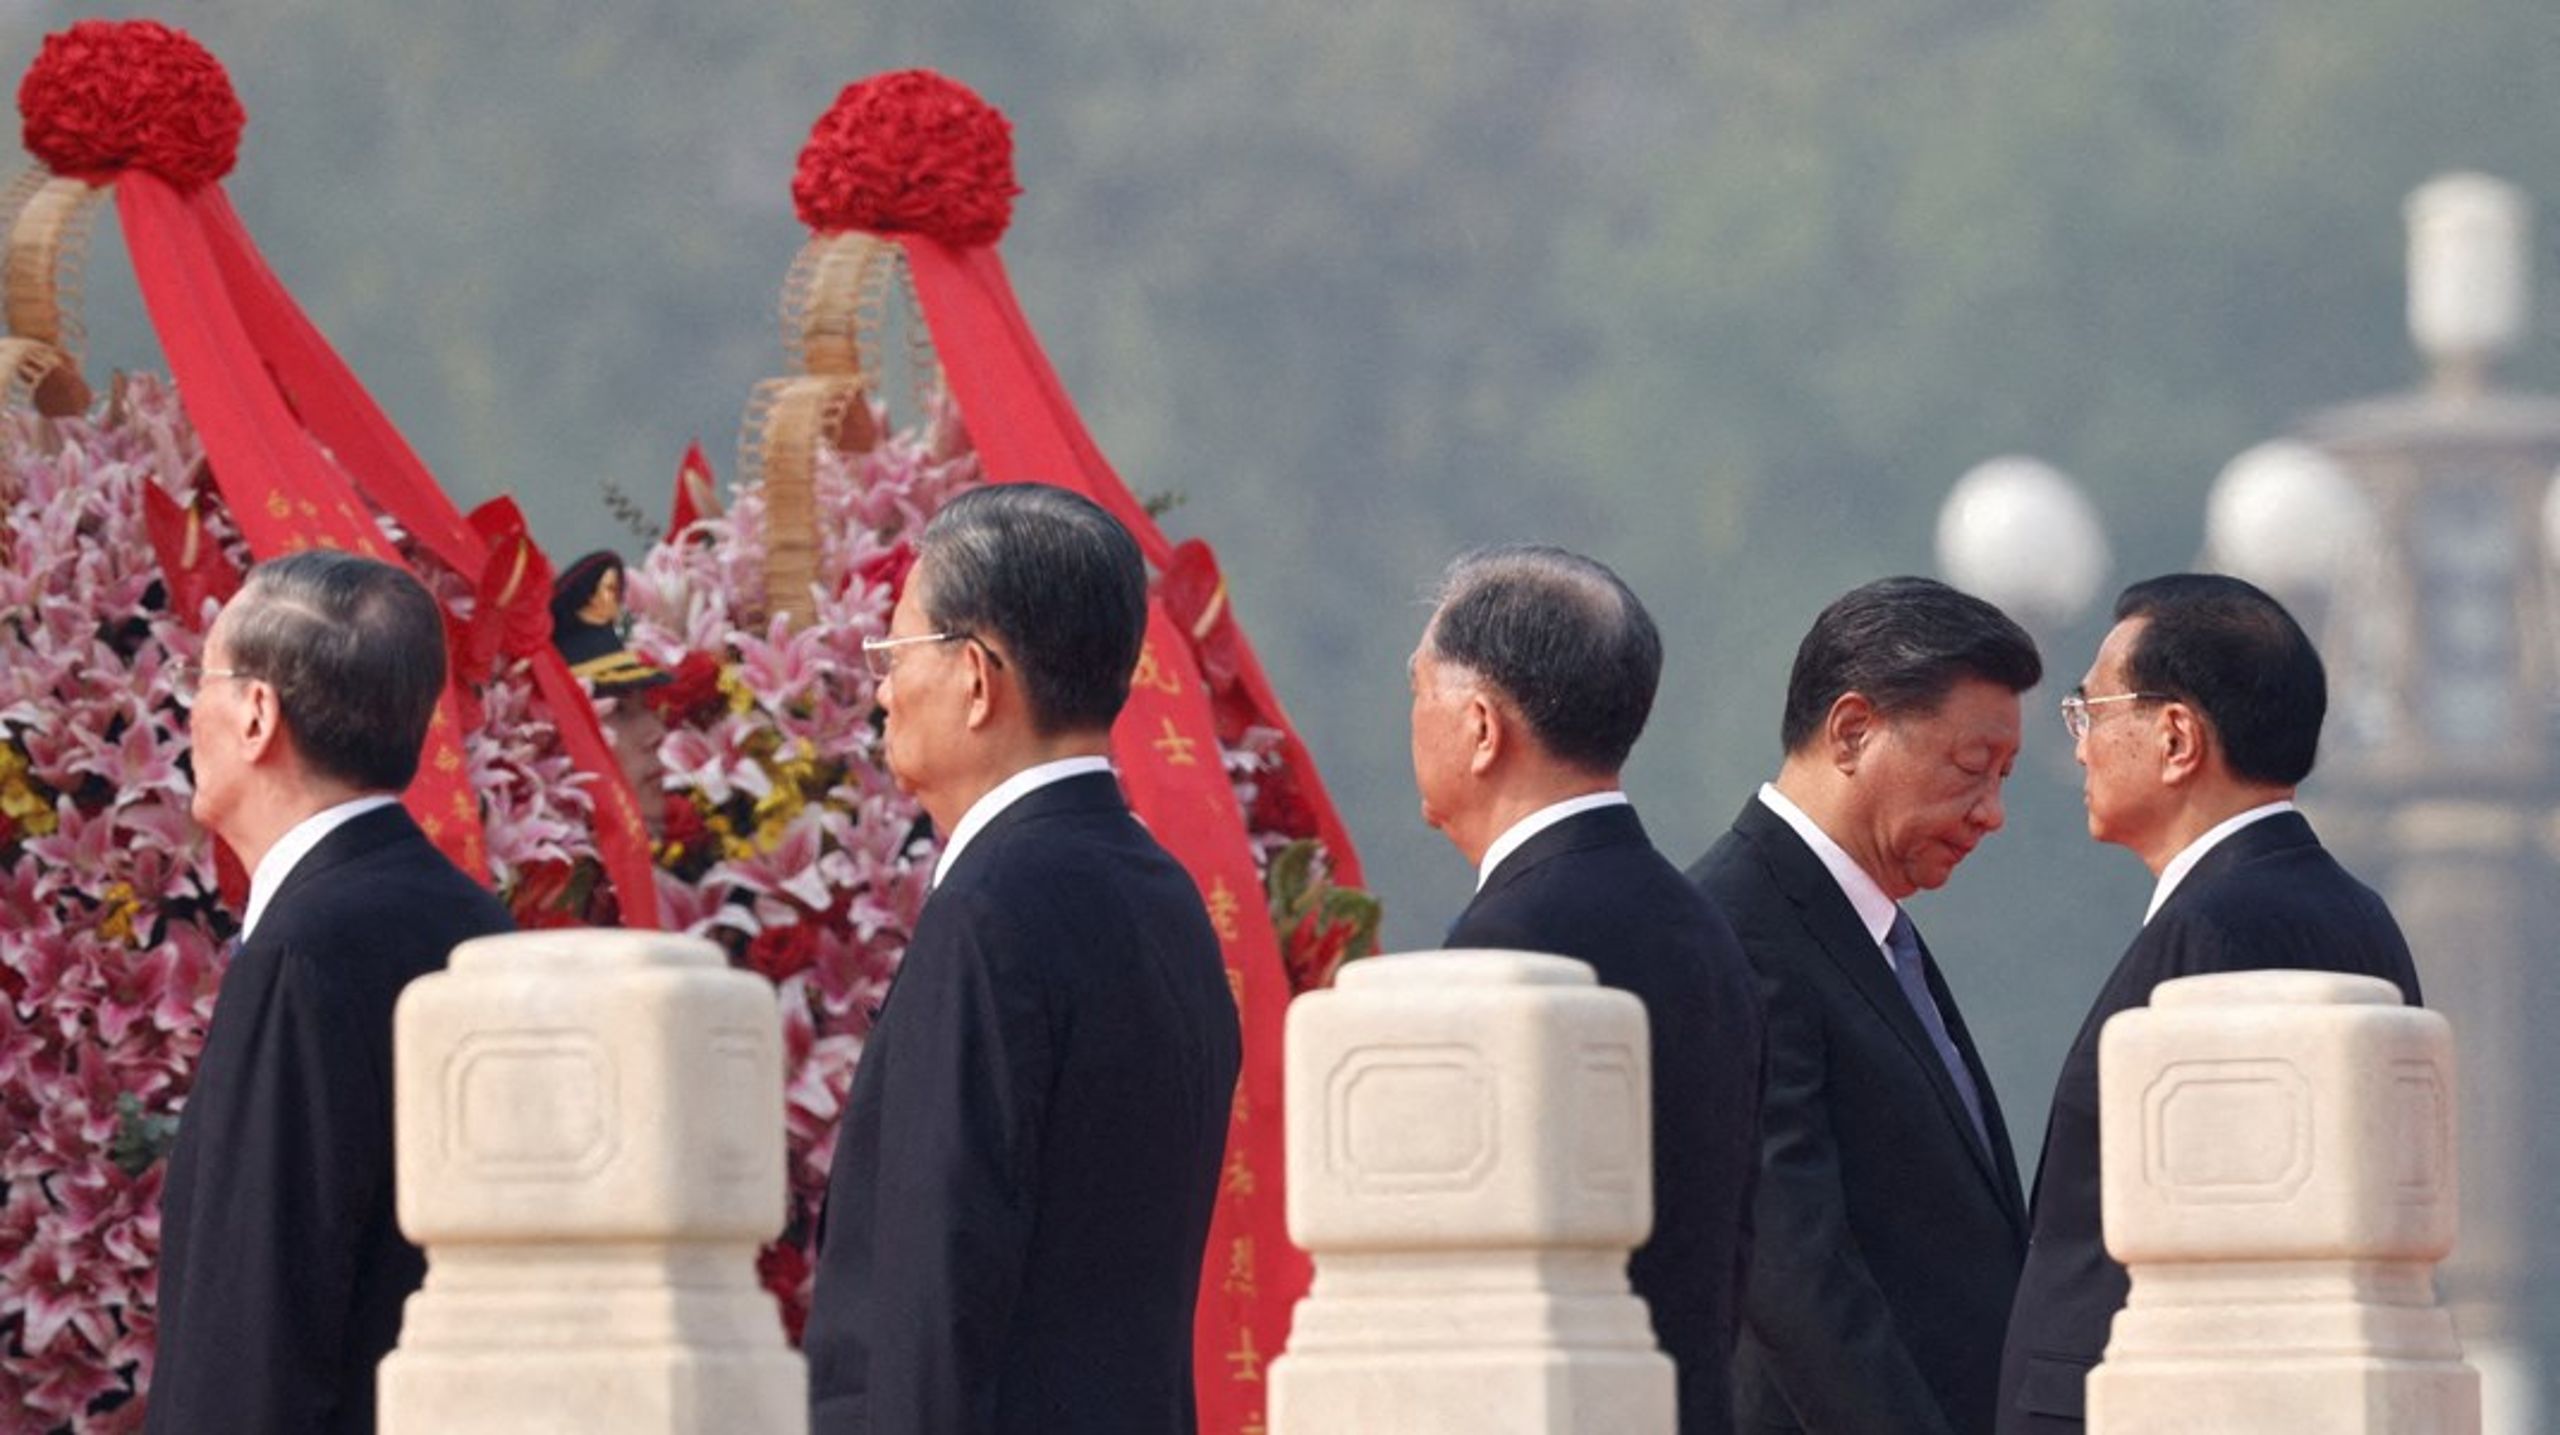 Karner giver en dyb indsigt i Xi Jinpings formative år. Men årene fra ministersekretærstillingen til den absolutte top i kommunistpartiet går for hurtigt, skriver Friis Arne Petersen.&nbsp;